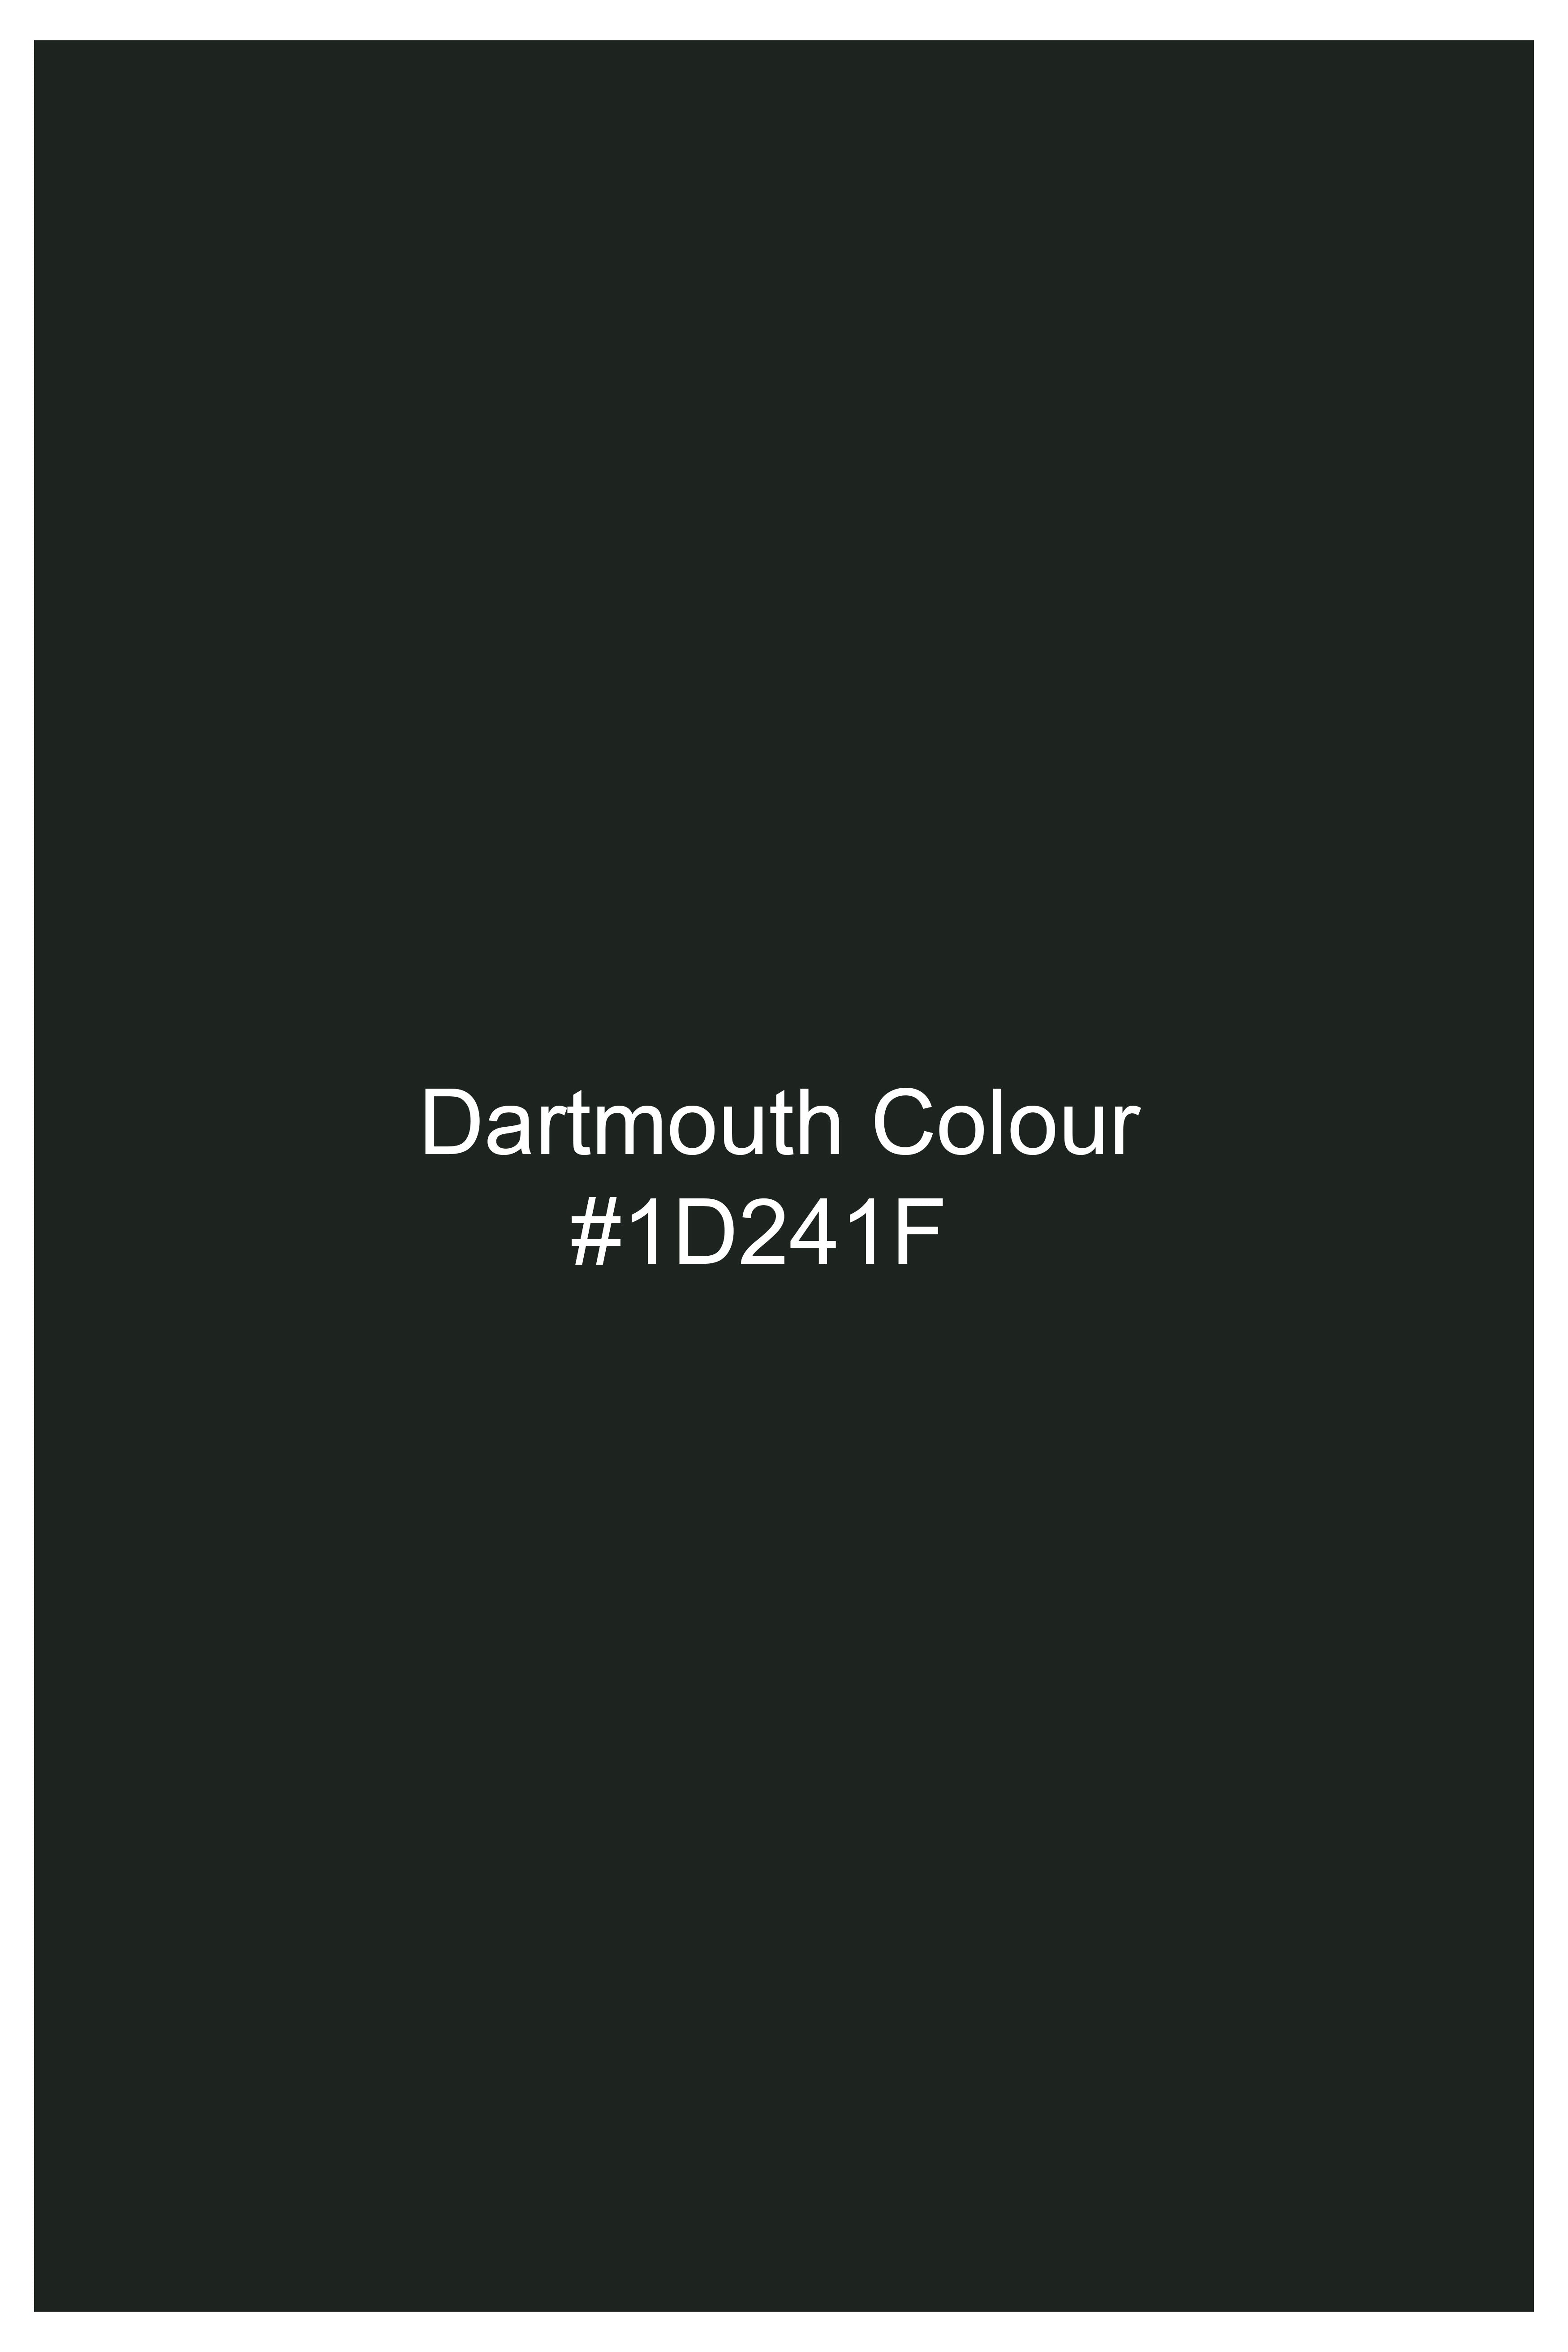 Dartmouth Green Wool Rich Cross Buttoned Bandhgala Designer Blazer BL2822-D178-36, BL2822-D178-38, BL2822-D178-40, BL2822-D178-42, BL2822-D178-44, BL2822-D178-46, BL2822-D178-48, BL2822-D178-50, BL2822-D178-52, BL2822-D178-54, BL2822-D178-56, BL2822-D178-58, BL2822-D178-60